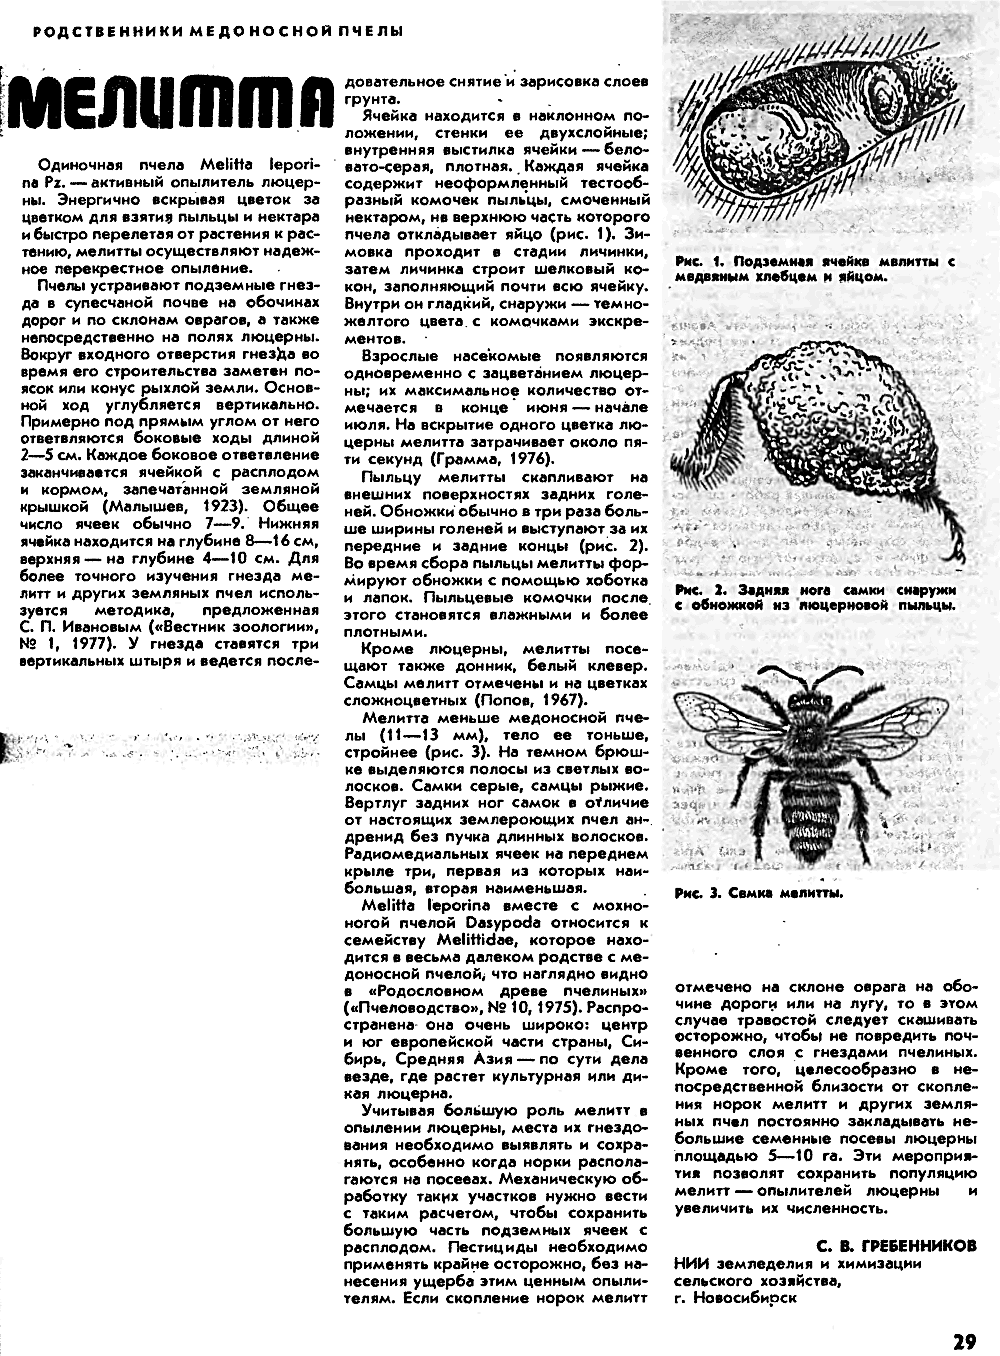 Мелитта. В.С. Гребенников. Пчеловодство, 1982, №3, с.29